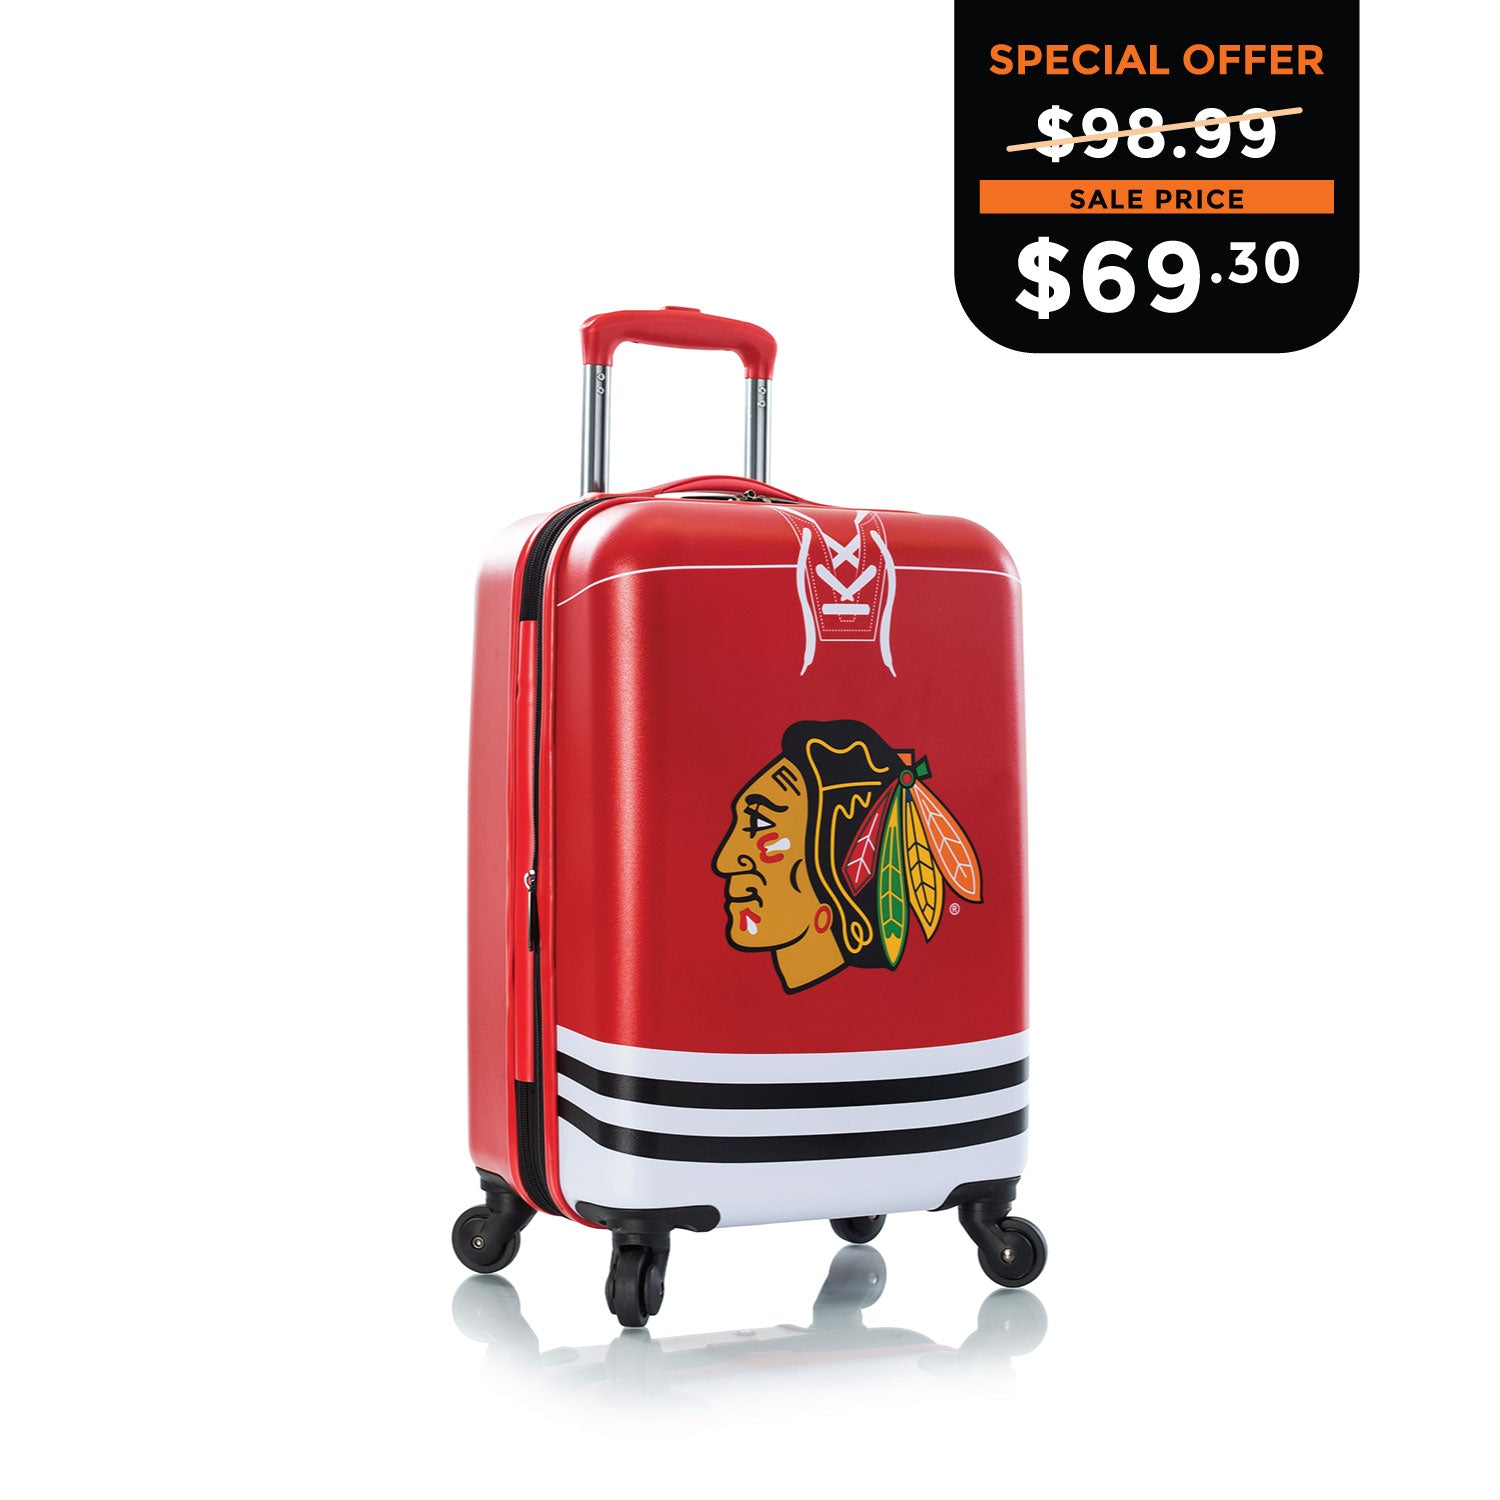 NHL Luggage 21" - Chicago Blackhawks